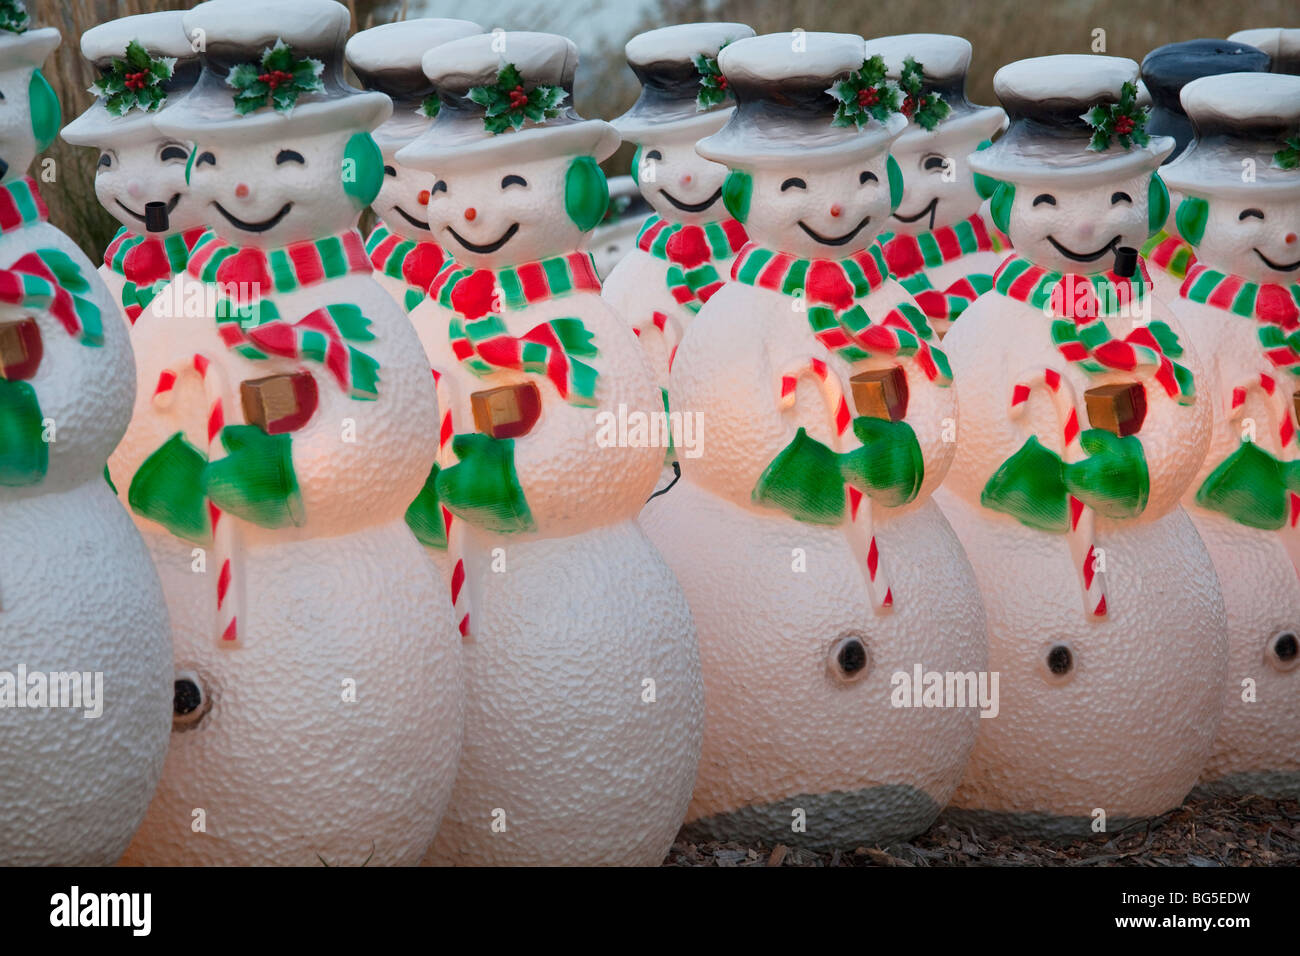 https://c8.alamy.com/comp/BG5EDW/snowmen-on-parade-at-cornerstone-garden-and-sculpture-center-in-sonoma-BG5EDW.jpg